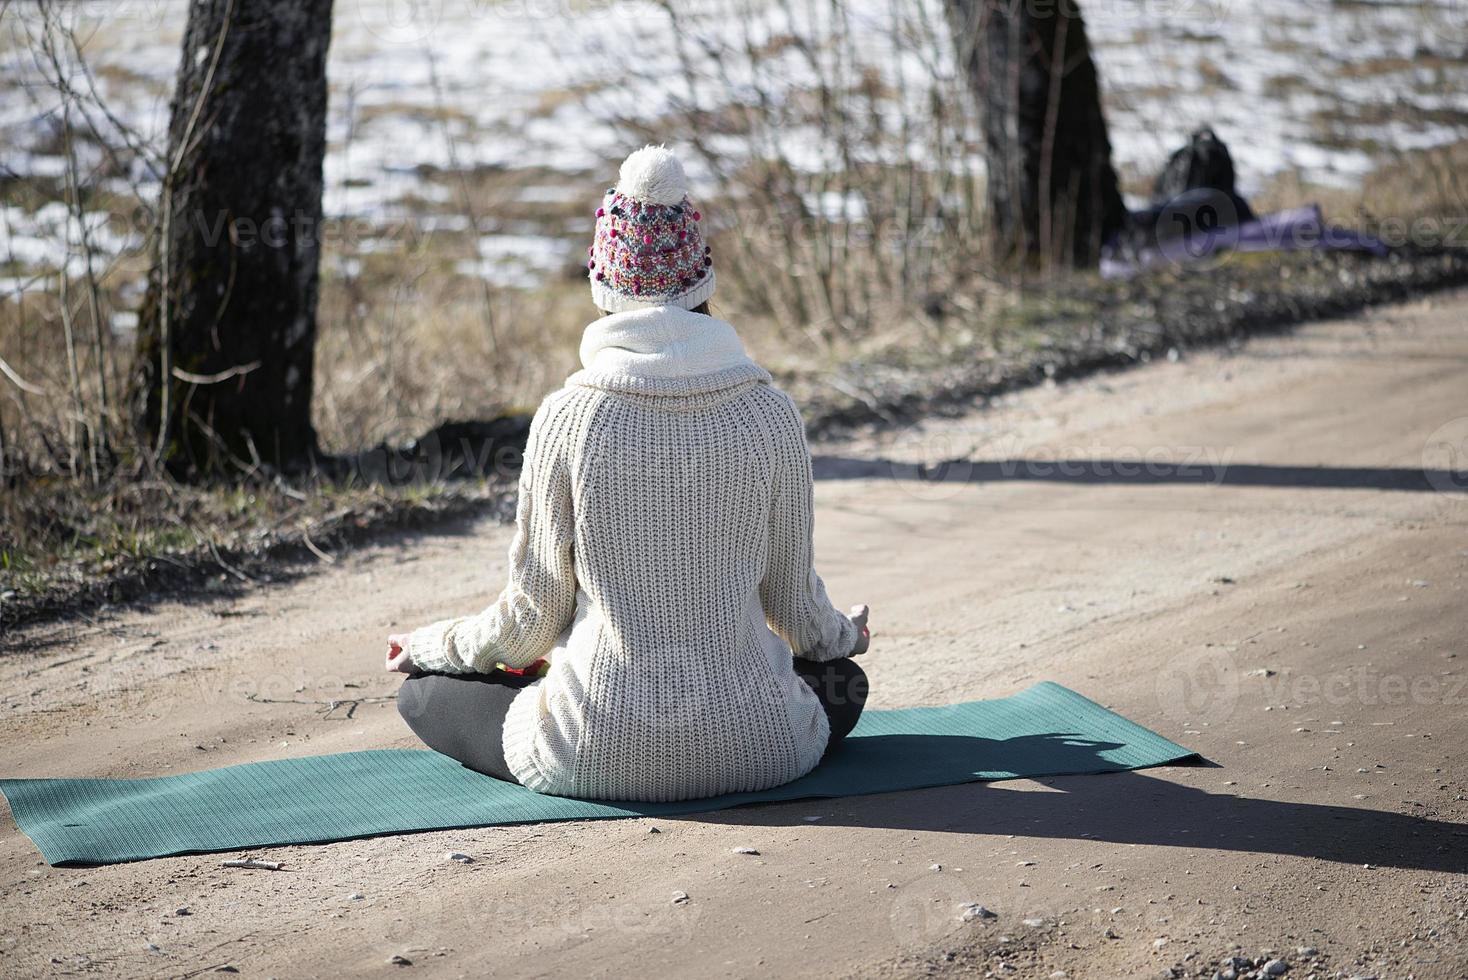 Une jeune femme athlétique effectue des exercices de yoga et de méditation à l'extérieur photo